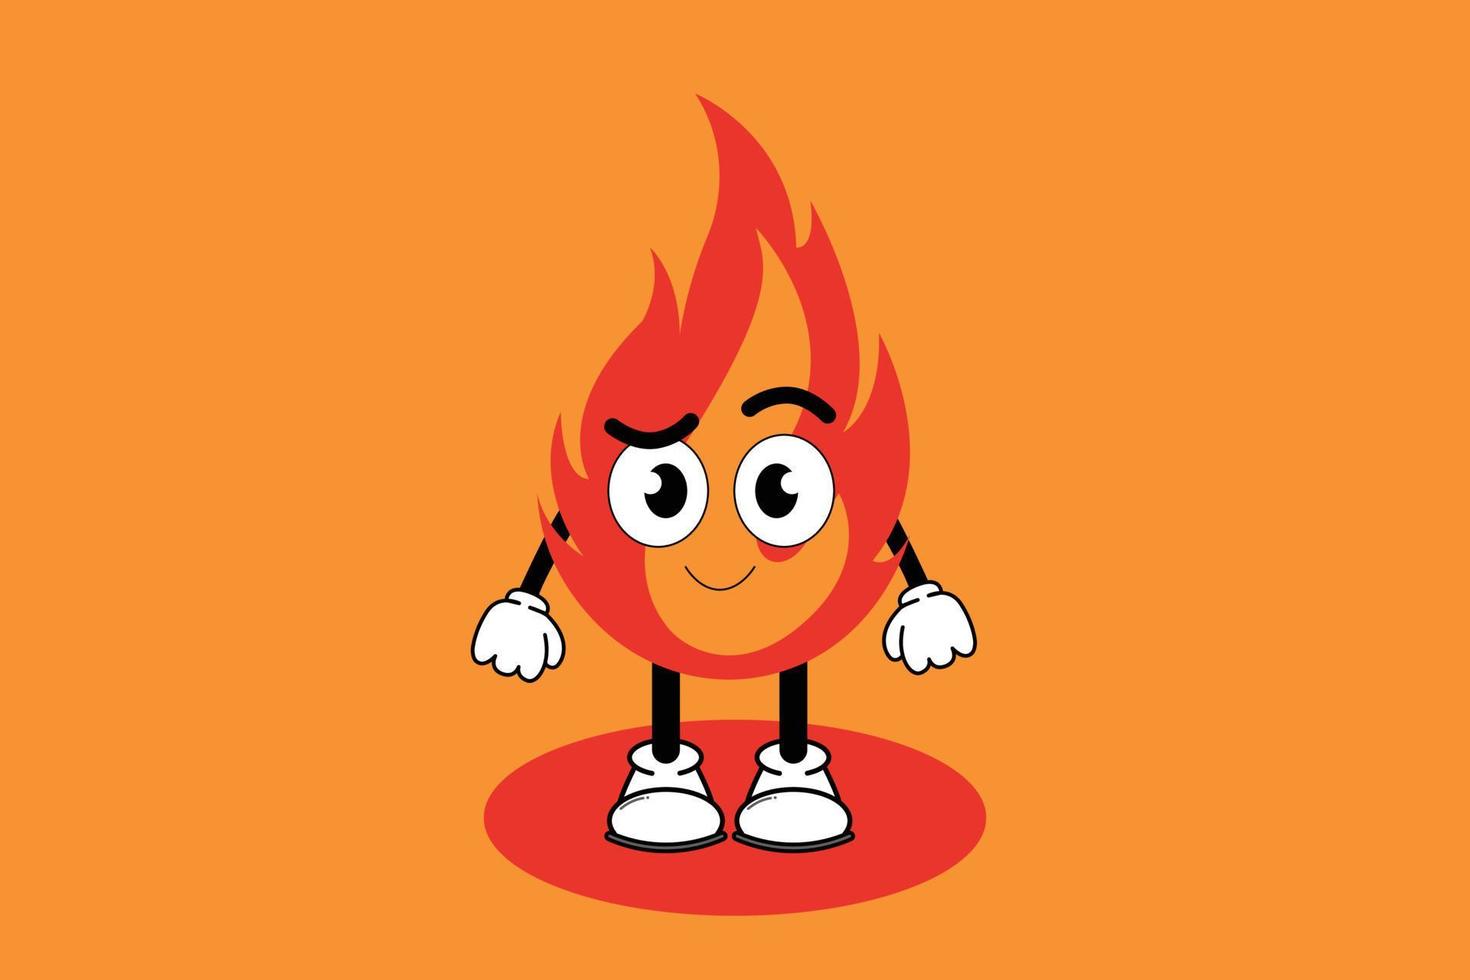 illustrazione grafica vettoriale personaggio dei cartoni animati di carino mascotte fuoco con posa. adatto per l'illustrazione di libri per bambini e il design di elementi.